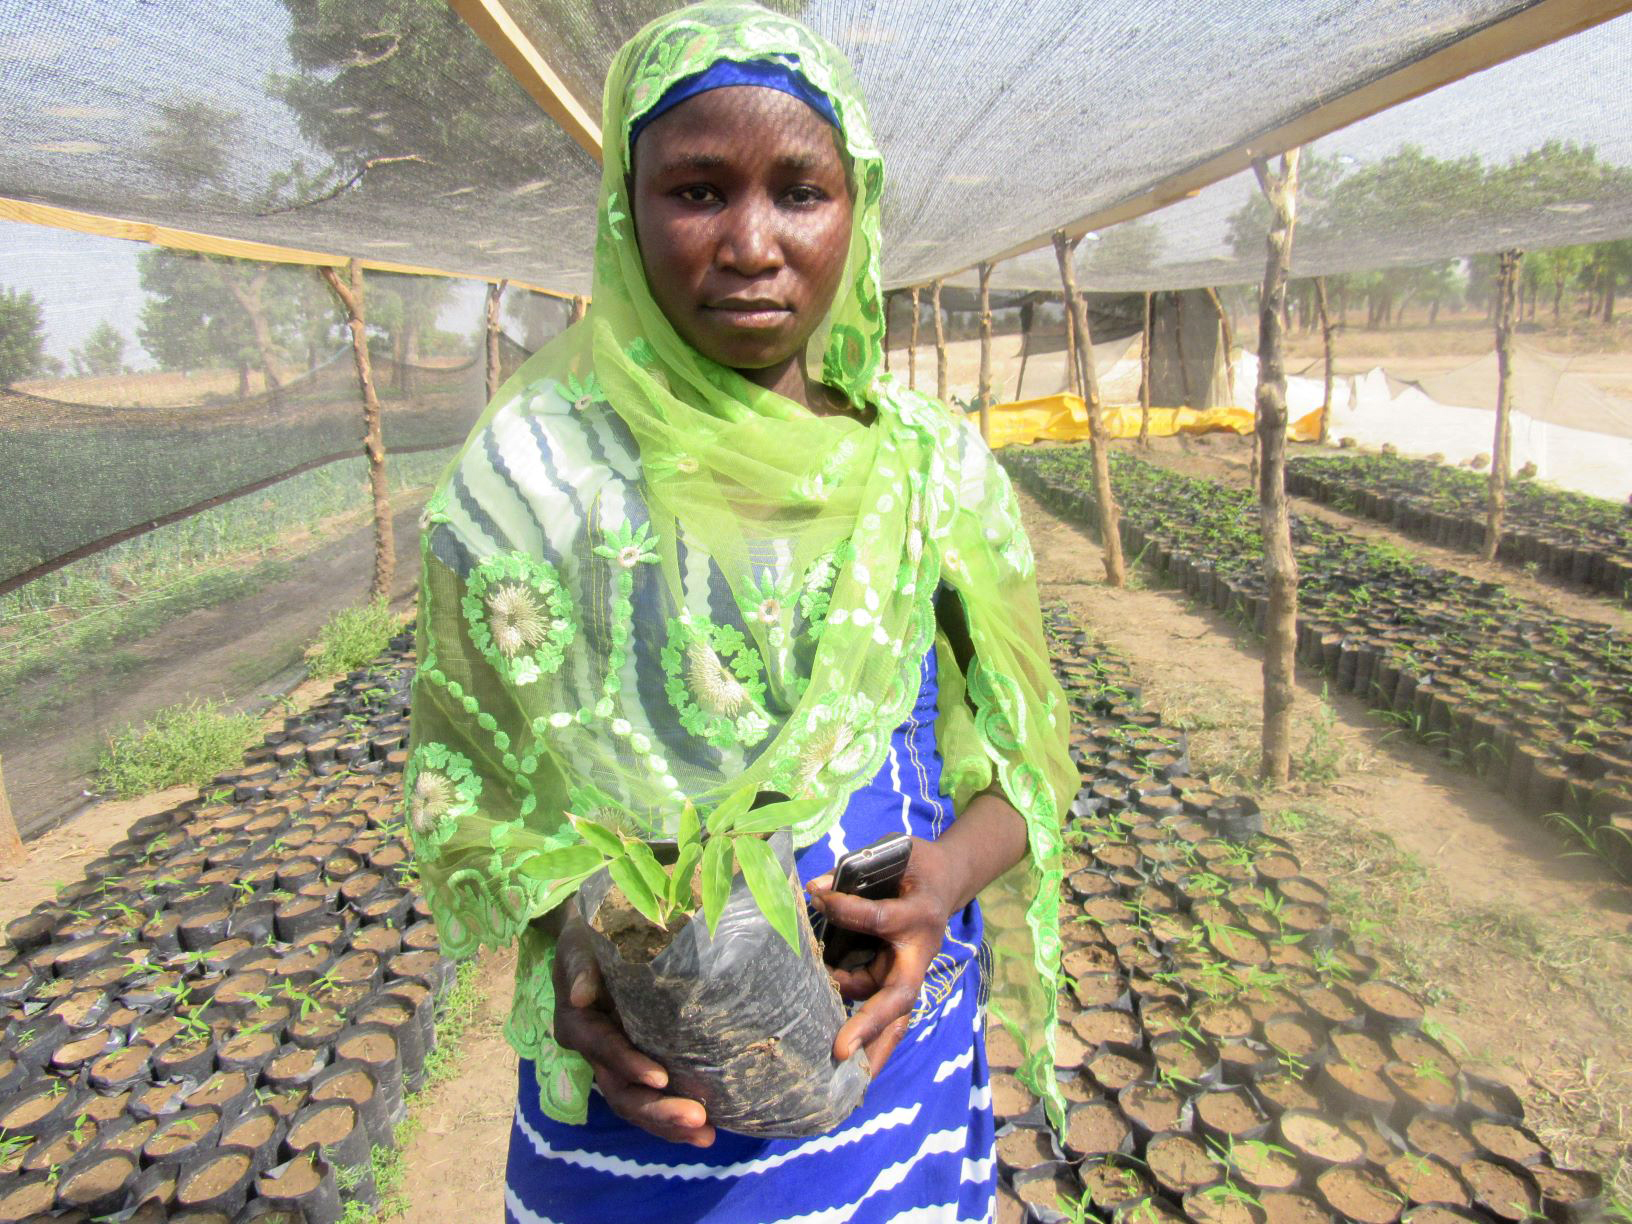 Woman holds seedling. Wears headscarf.